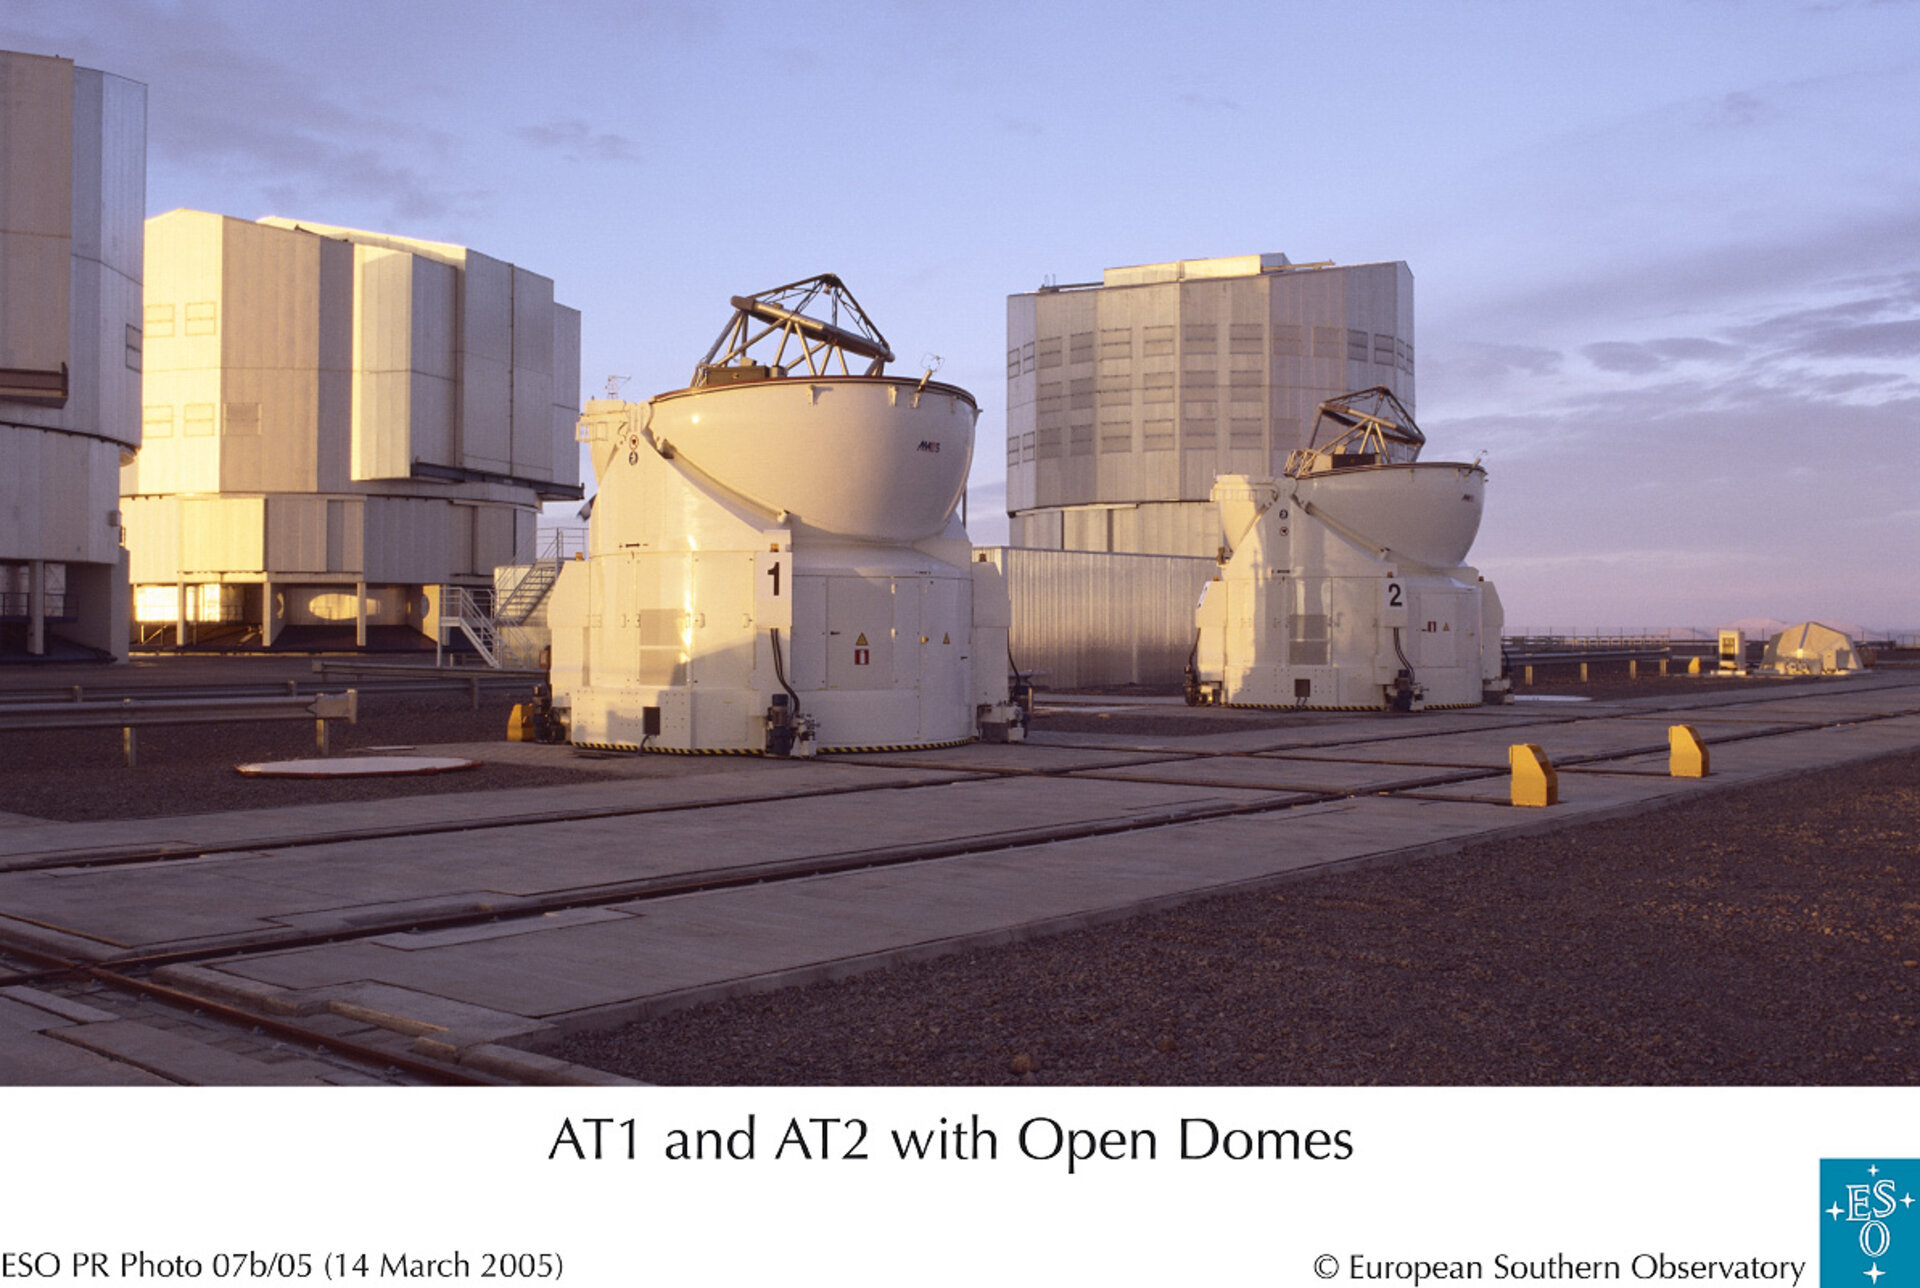 Depuis le 2 février, deux ensembles mobiles AT (Auxiliary Telescope) aux côtés des quatre télescopes principaux du VLT